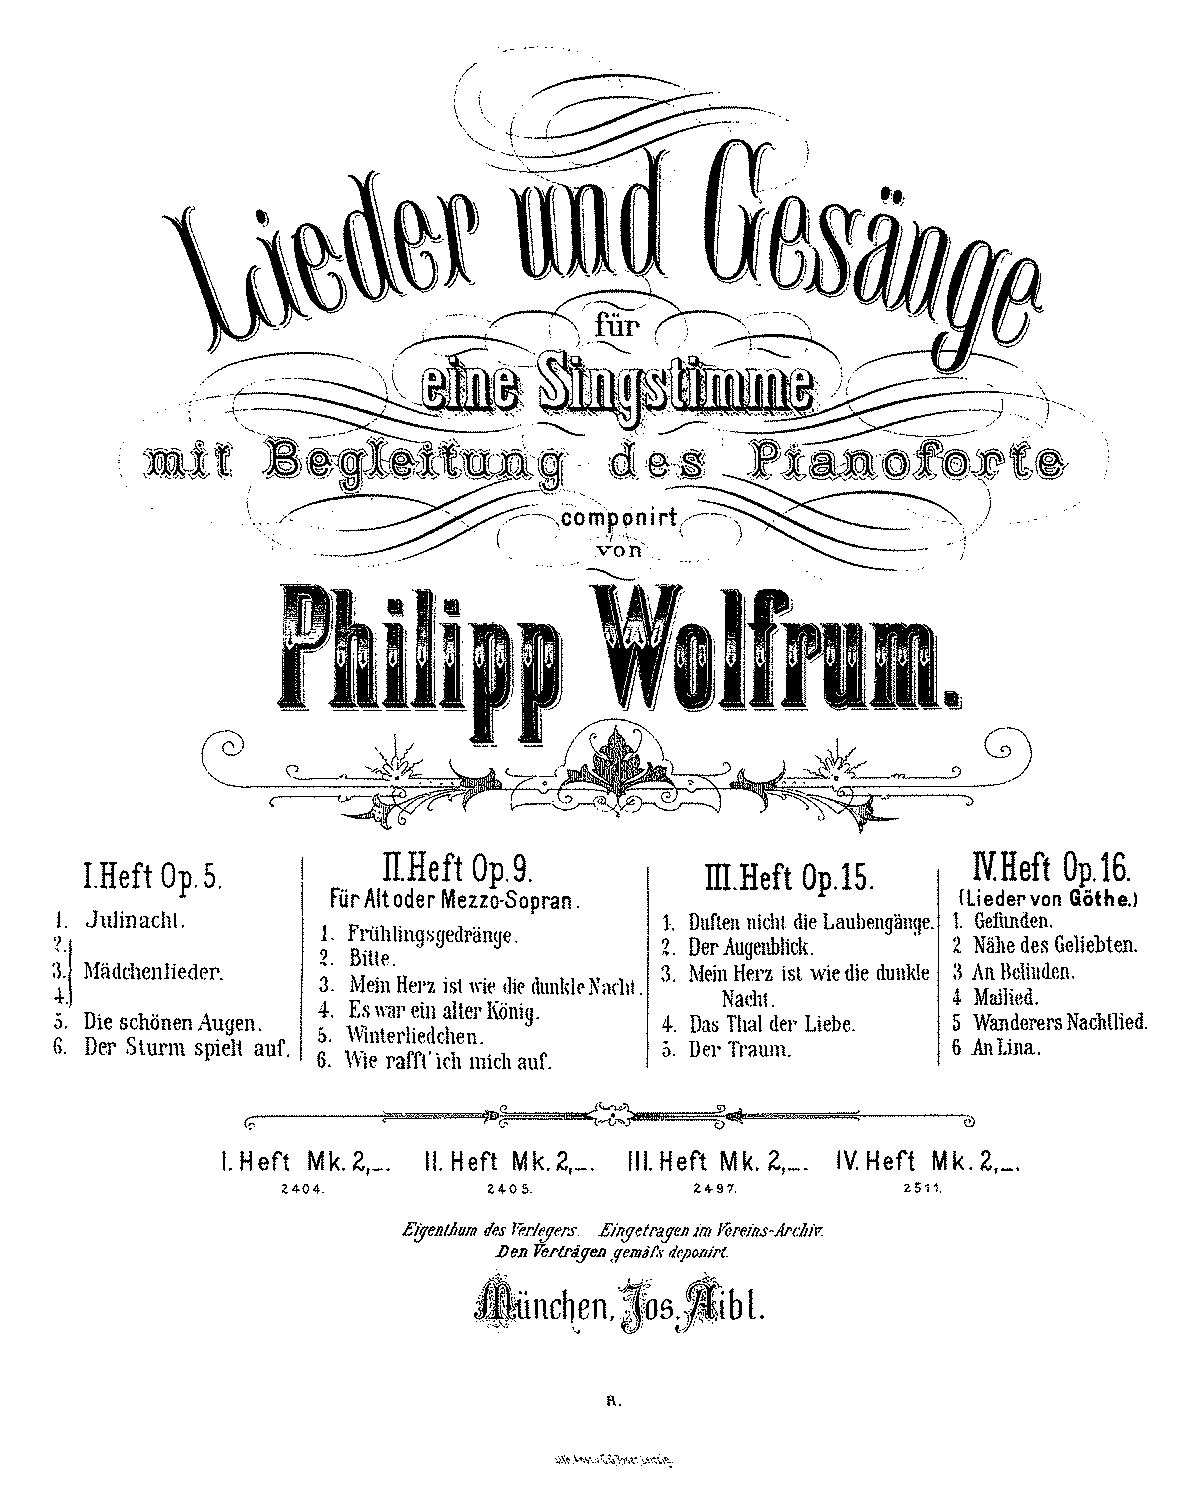 6 Lieder von Goethe, Op.16 (Wolfrum, Philipp) - IMSLP